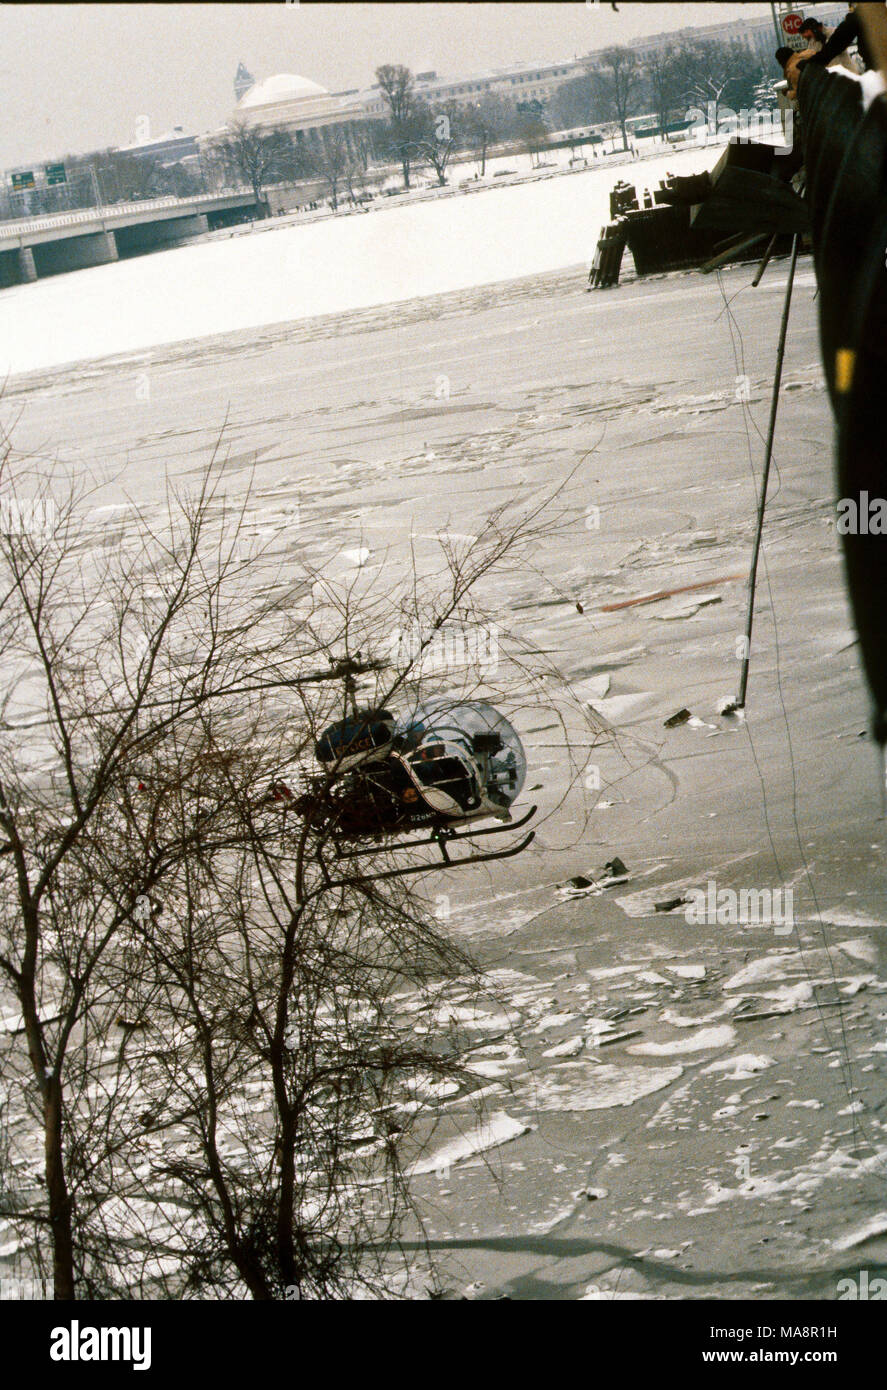 Washington, DC., USA, 14 janvier 1982 Le 13 janvier 1982, Vol 90 Air Florida s'écrase sur Washington, DC's 14th Street Bridge et est tombé dans la rivière Potomac peu après le décollage. Un total de 70 passagers, 4 membres d'équipage et 4 automobilistes sur le pont ont été tués. L'accident du Boeing 737-200 était dû à un système anti-givrage étant laissé. Un hélicoptère de la Police DC plane au-dessus de la zone de la rivière Potomac, juste au nord de la 14th Street Bridge span qu'Air Florida a frappé la veille puis plonger dans les eaux glacées pour preuve. Credit : Mark Reinstein/MediaPunch Banque D'Images